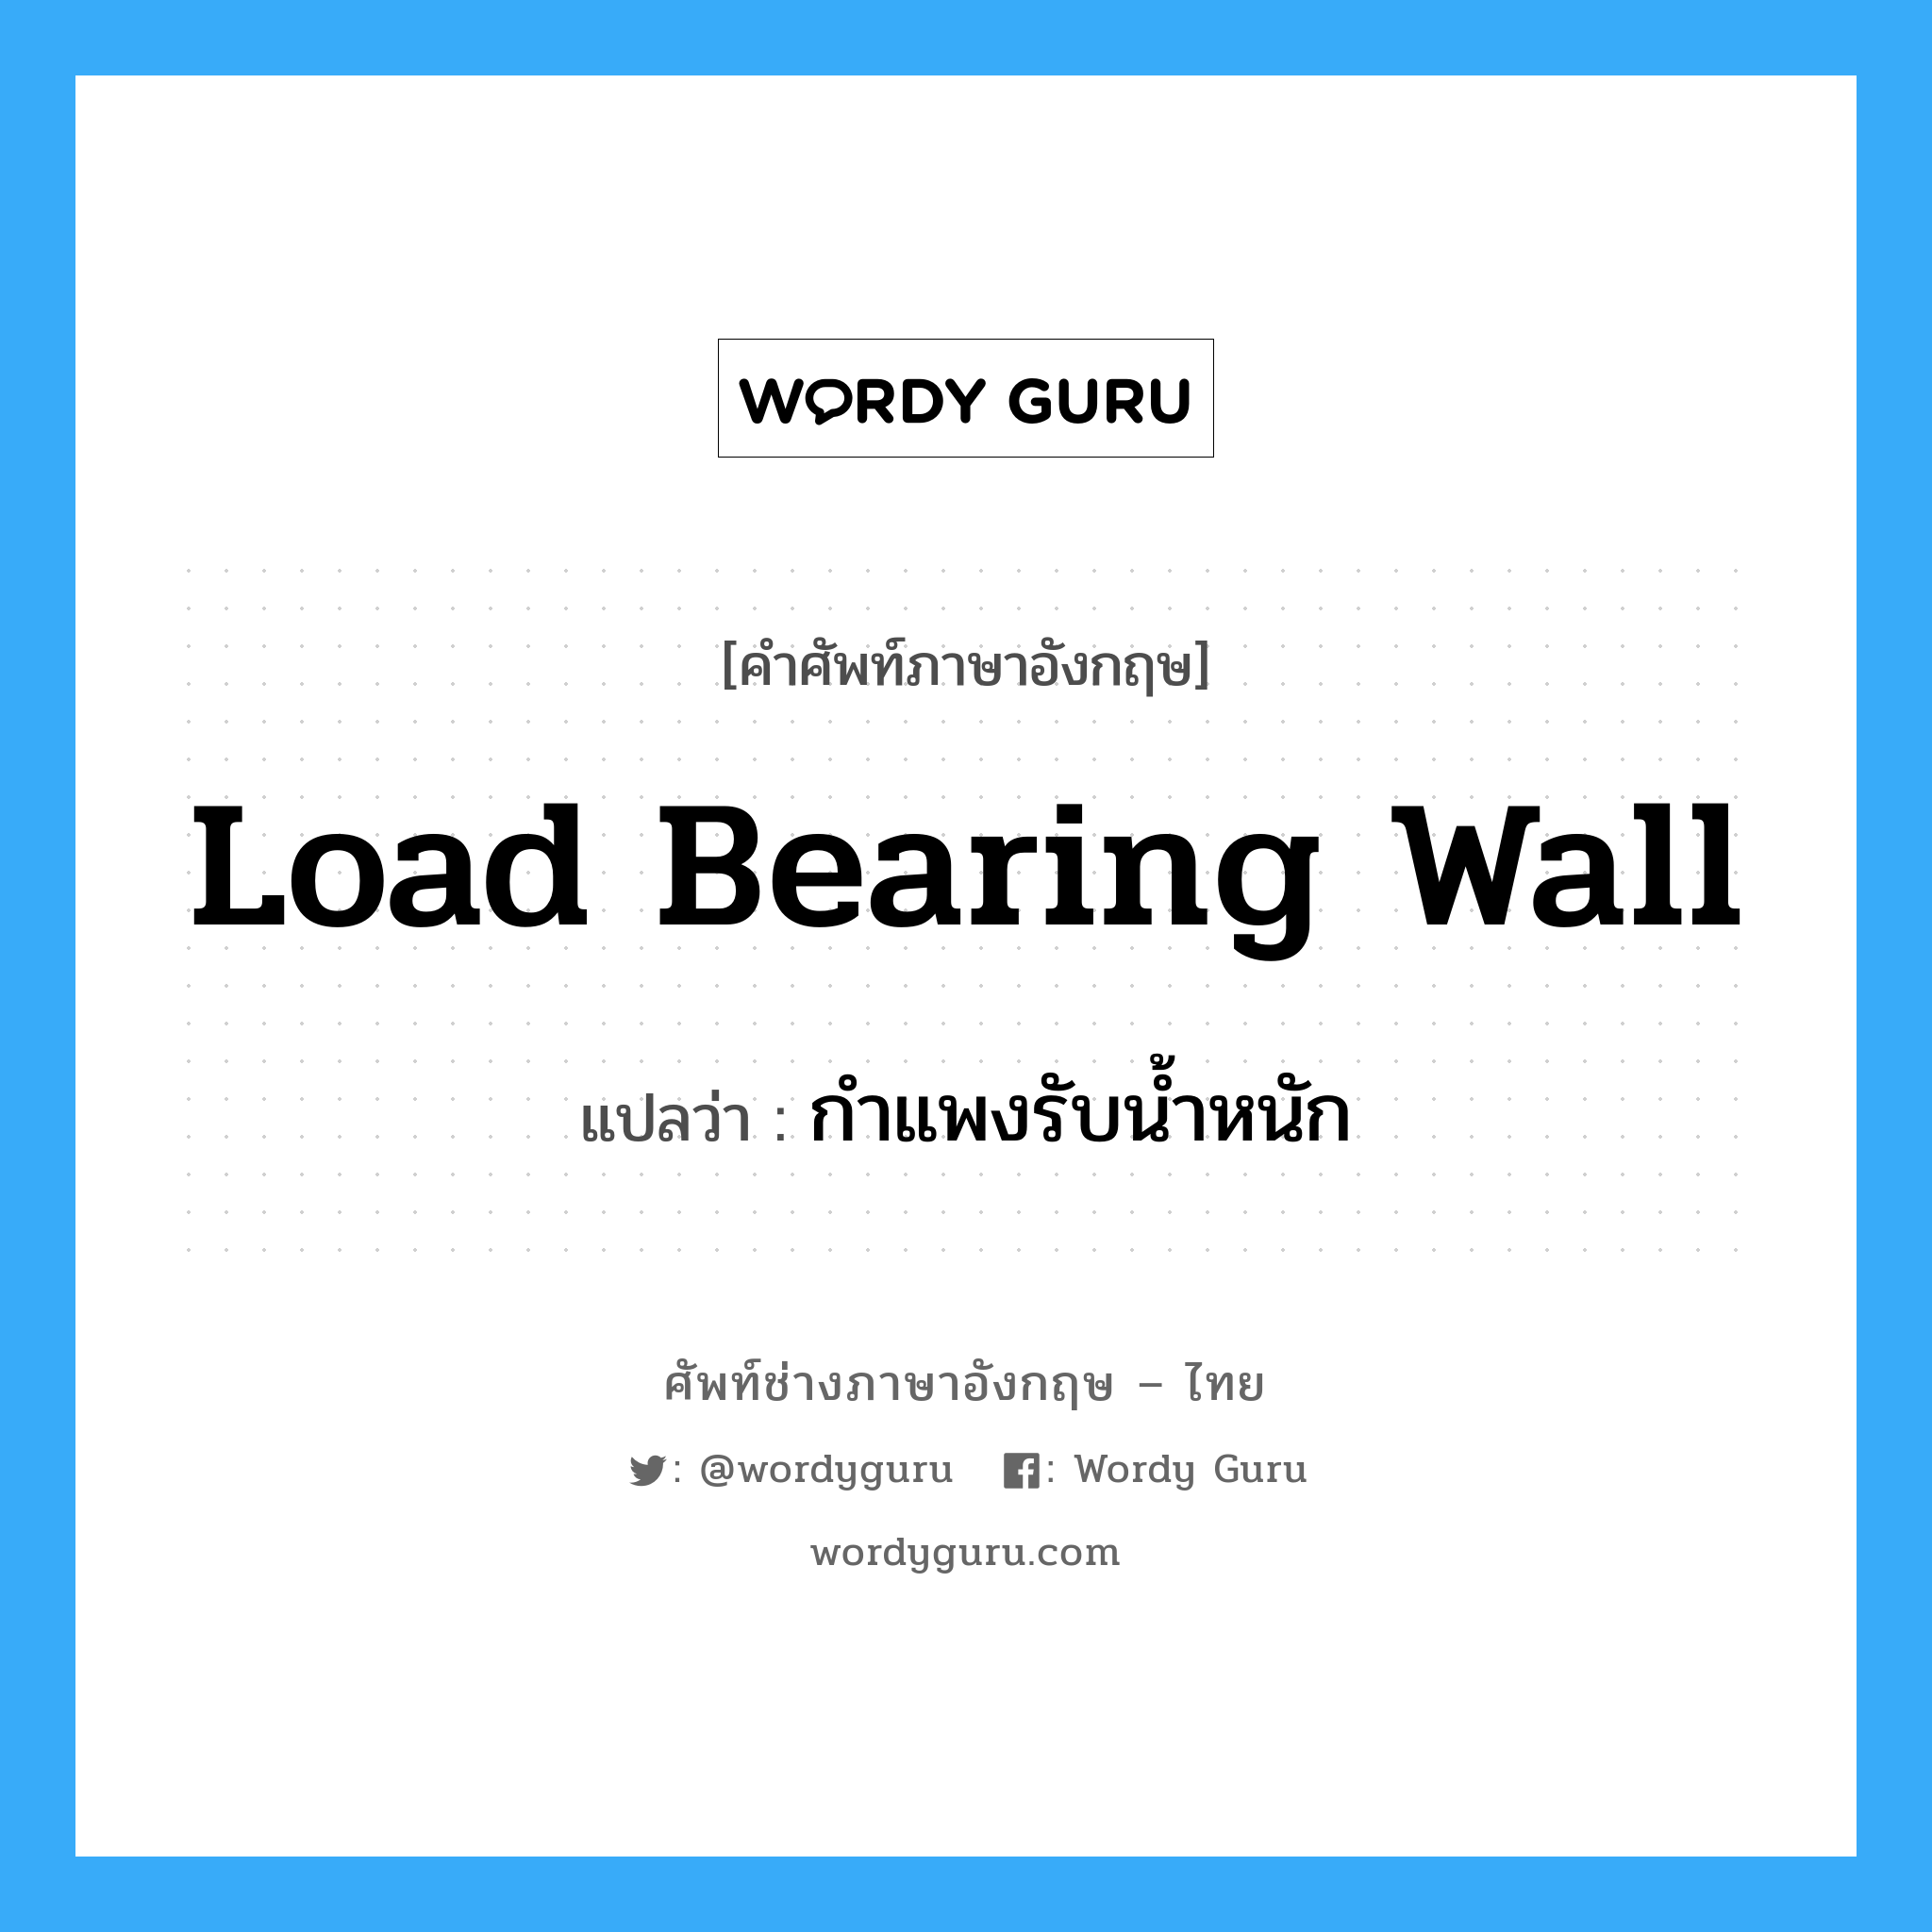 load bearing wall แปลว่า?, คำศัพท์ช่างภาษาอังกฤษ - ไทย load bearing wall คำศัพท์ภาษาอังกฤษ load bearing wall แปลว่า กำแพงรับน้ำหนัก